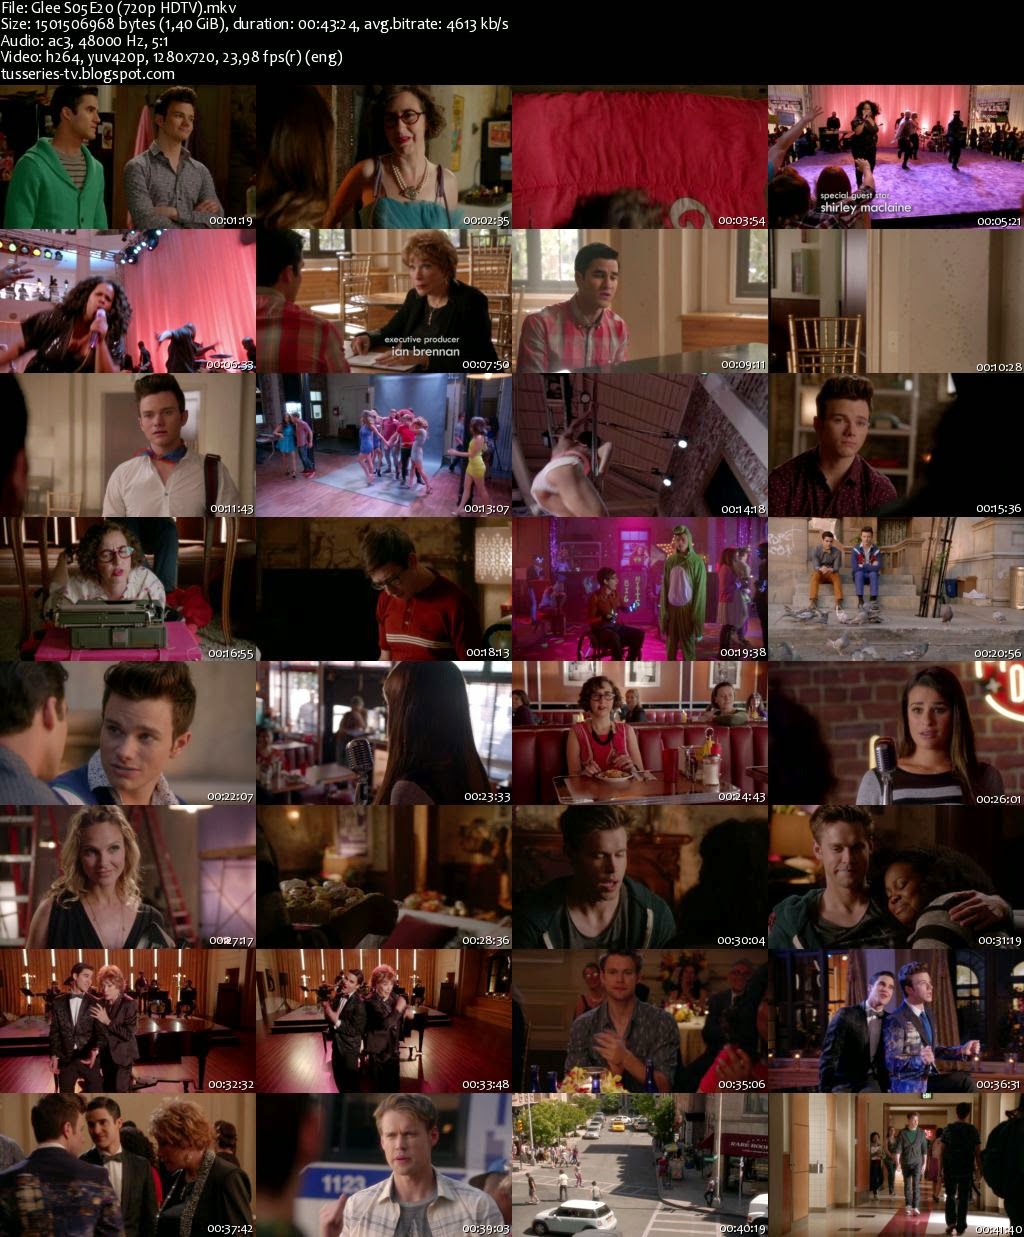 Ver Glee Online Gratis Temporada 6